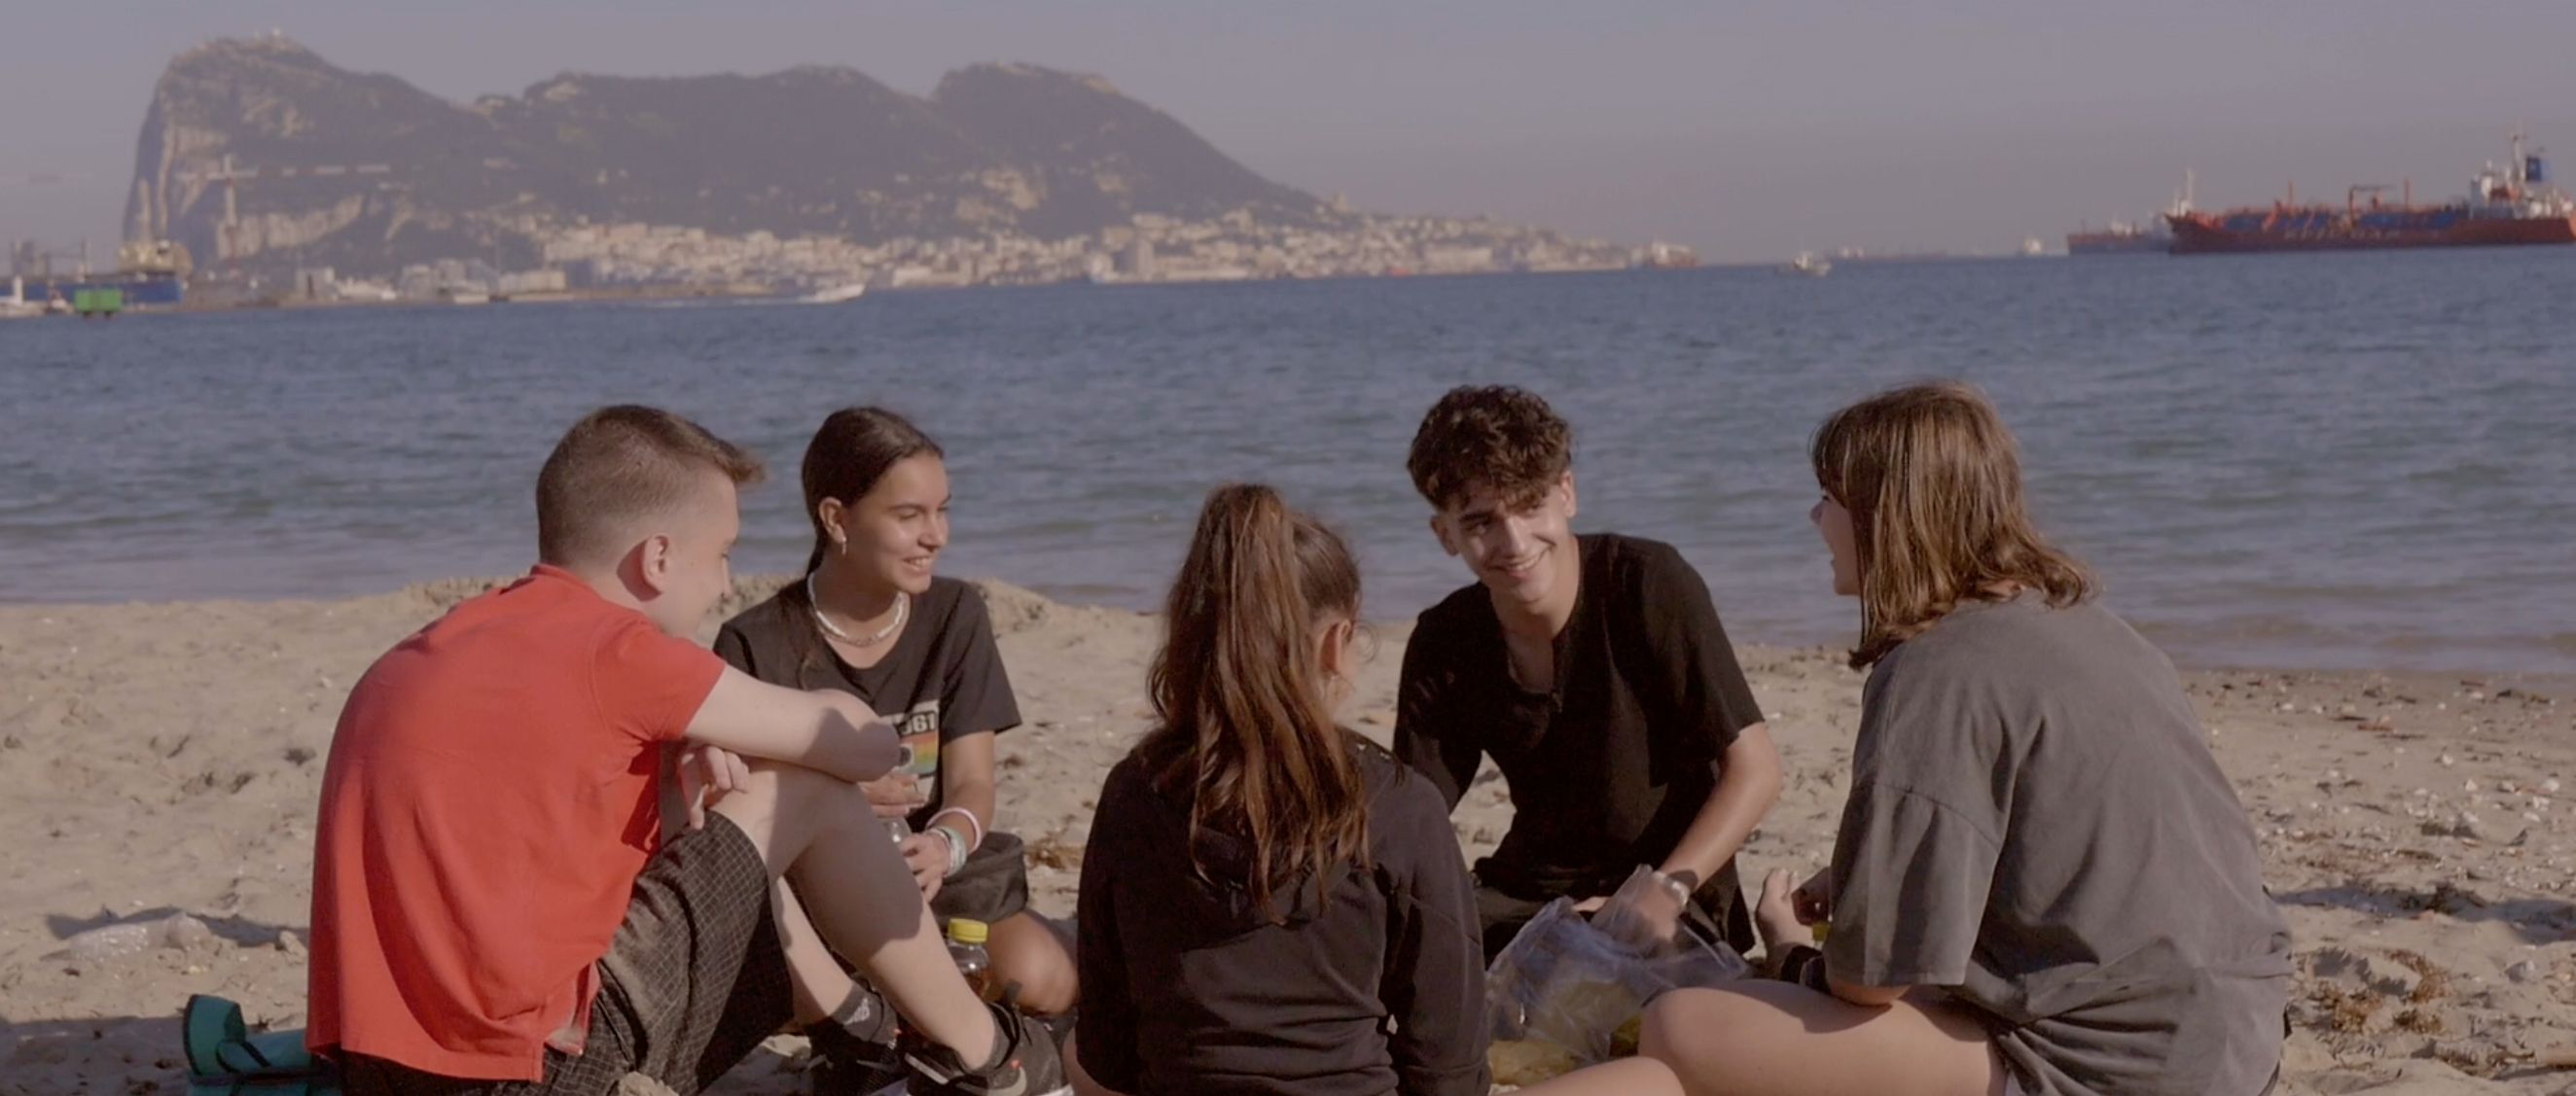 Estudiantes de Algeciras presentan sus cortometrajes en el festival de San Sebastián 